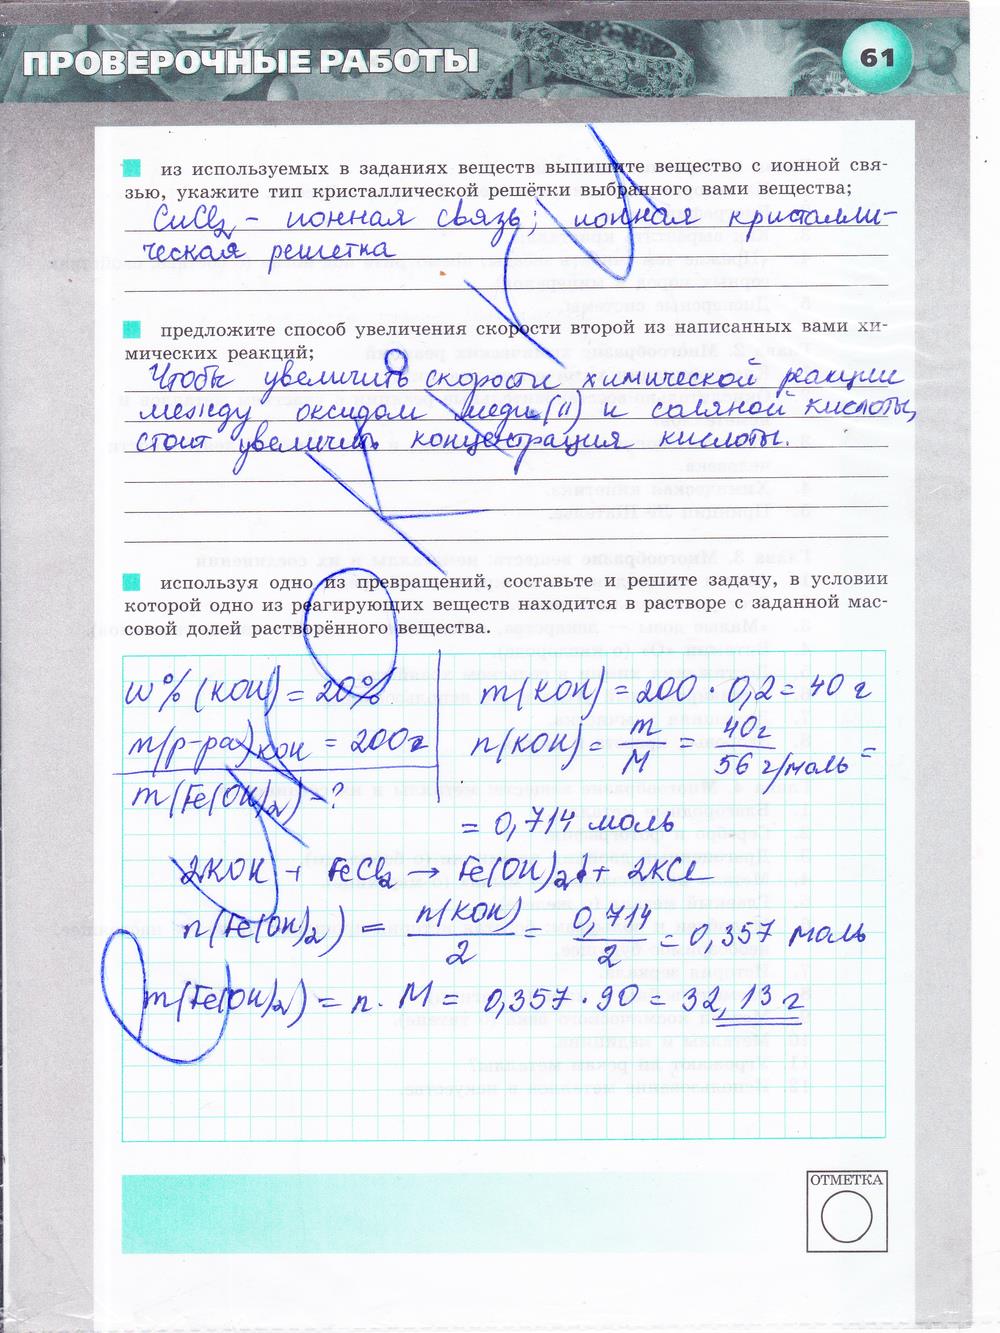 гдз 9 класс тетрадь-экзаменатор страница 61 химия Бобылева, Бирюлина